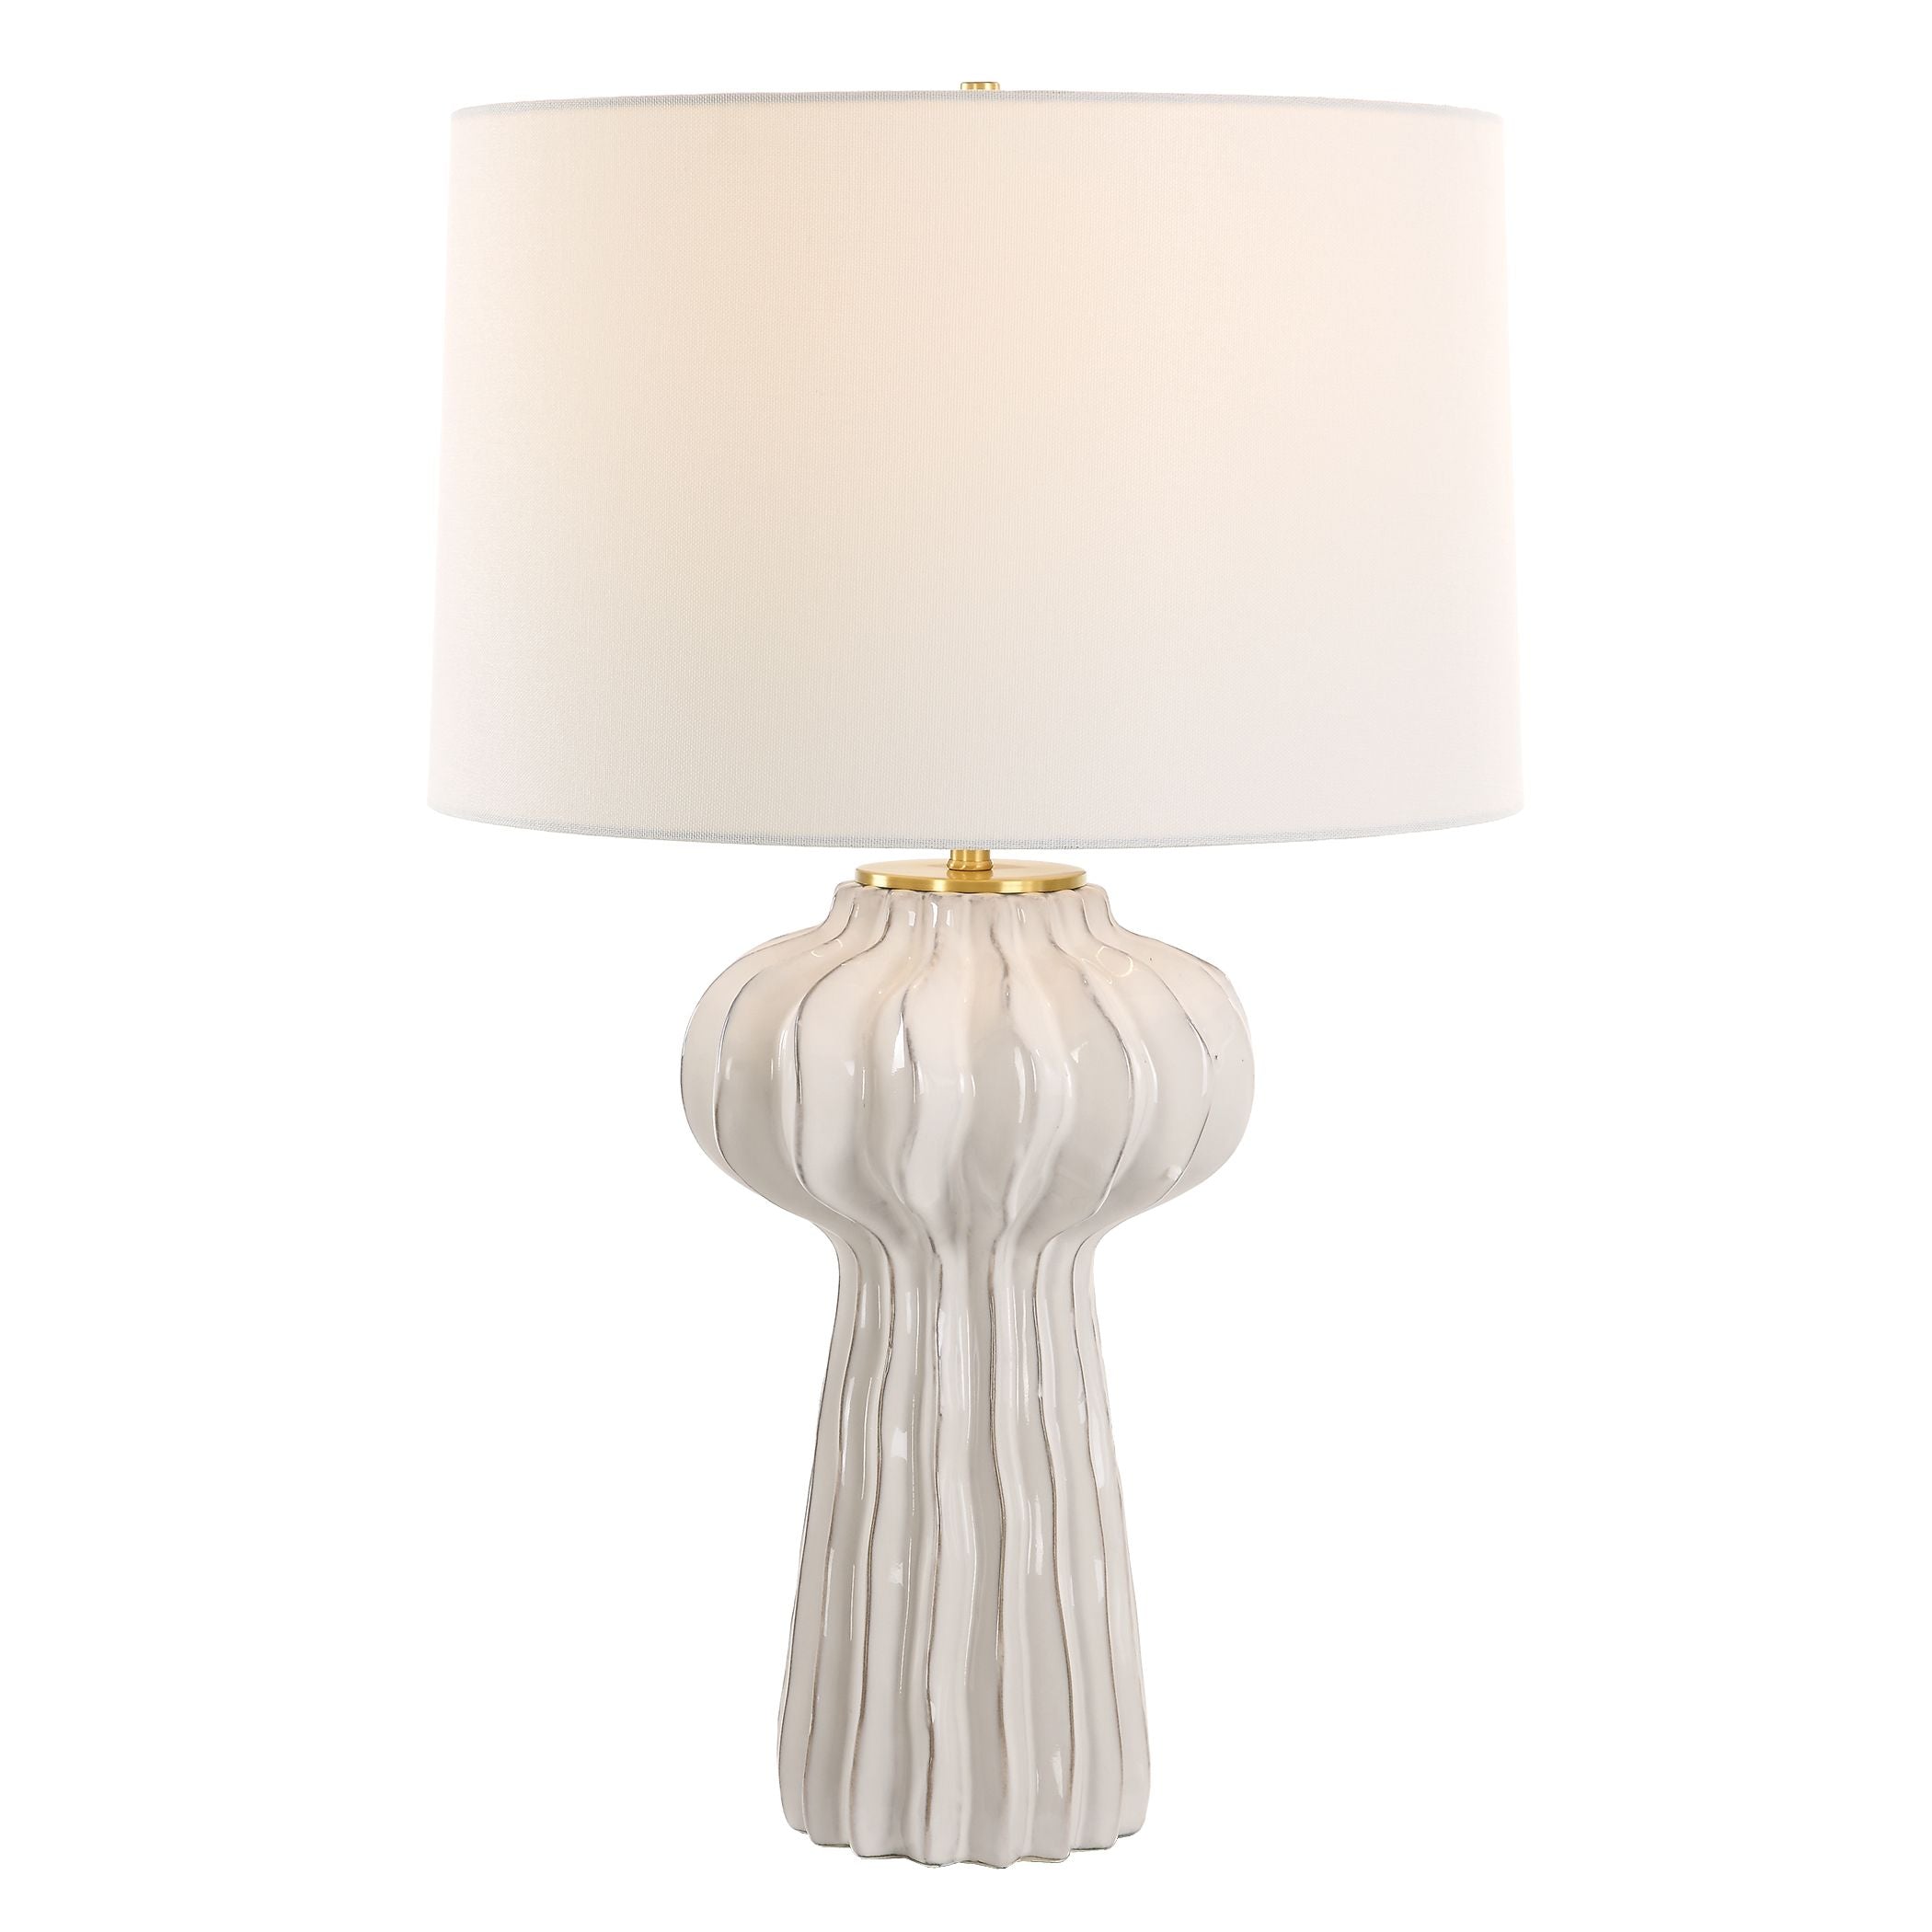 Uttermost Wrenley Ridged White Table Lamp